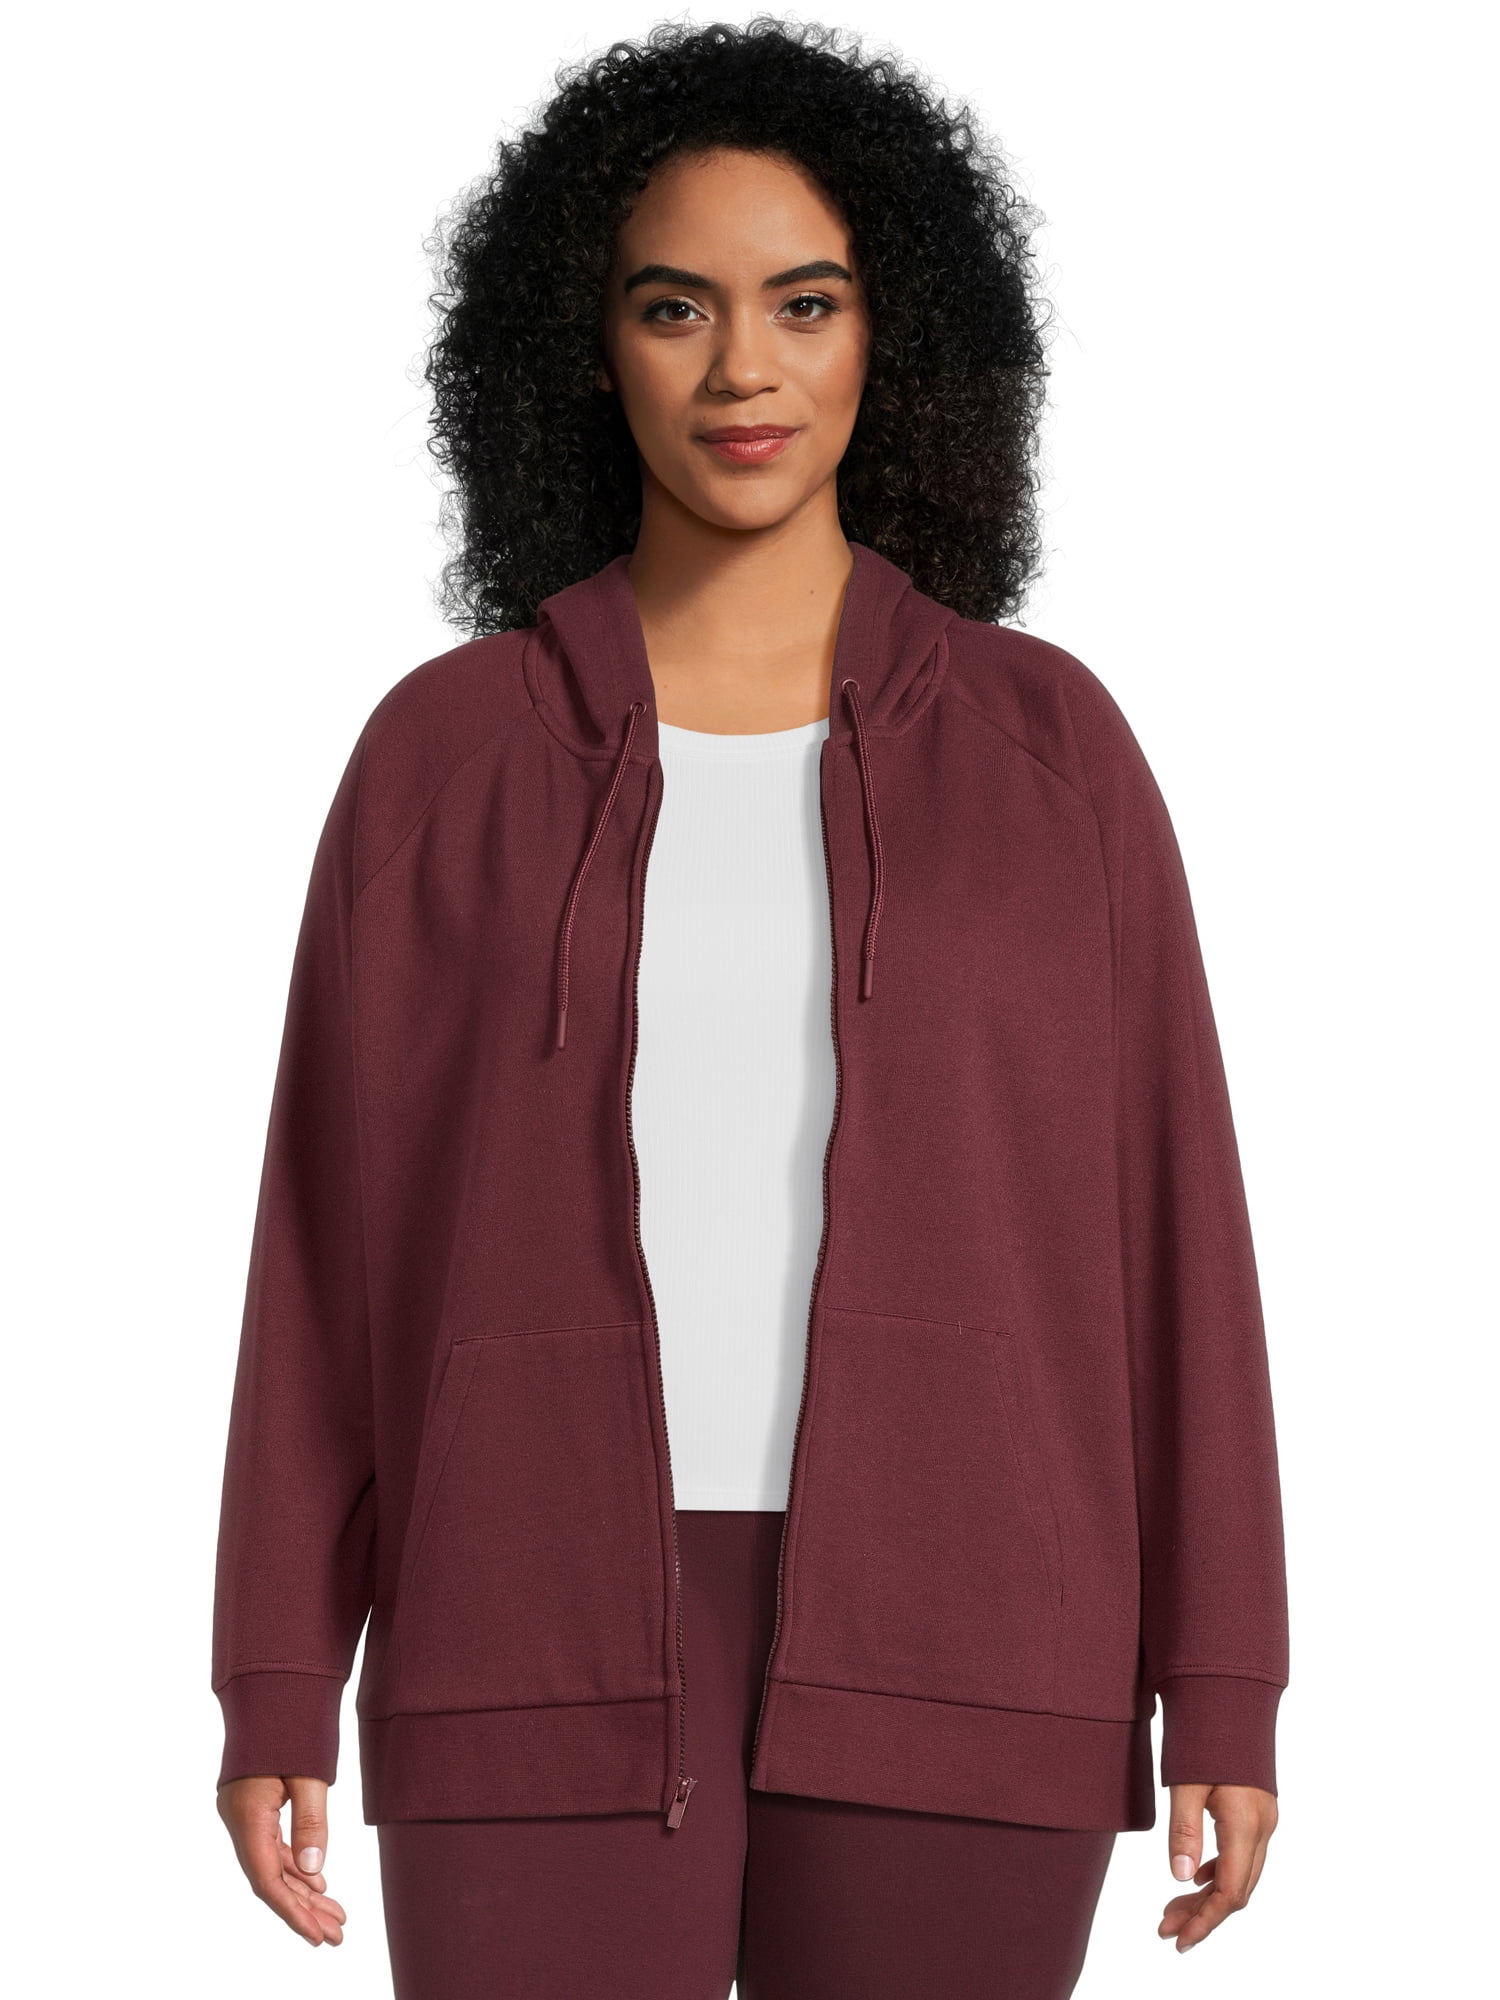 Terra & Sky Women's Plus Size Full Zip Fleece Hoodie 